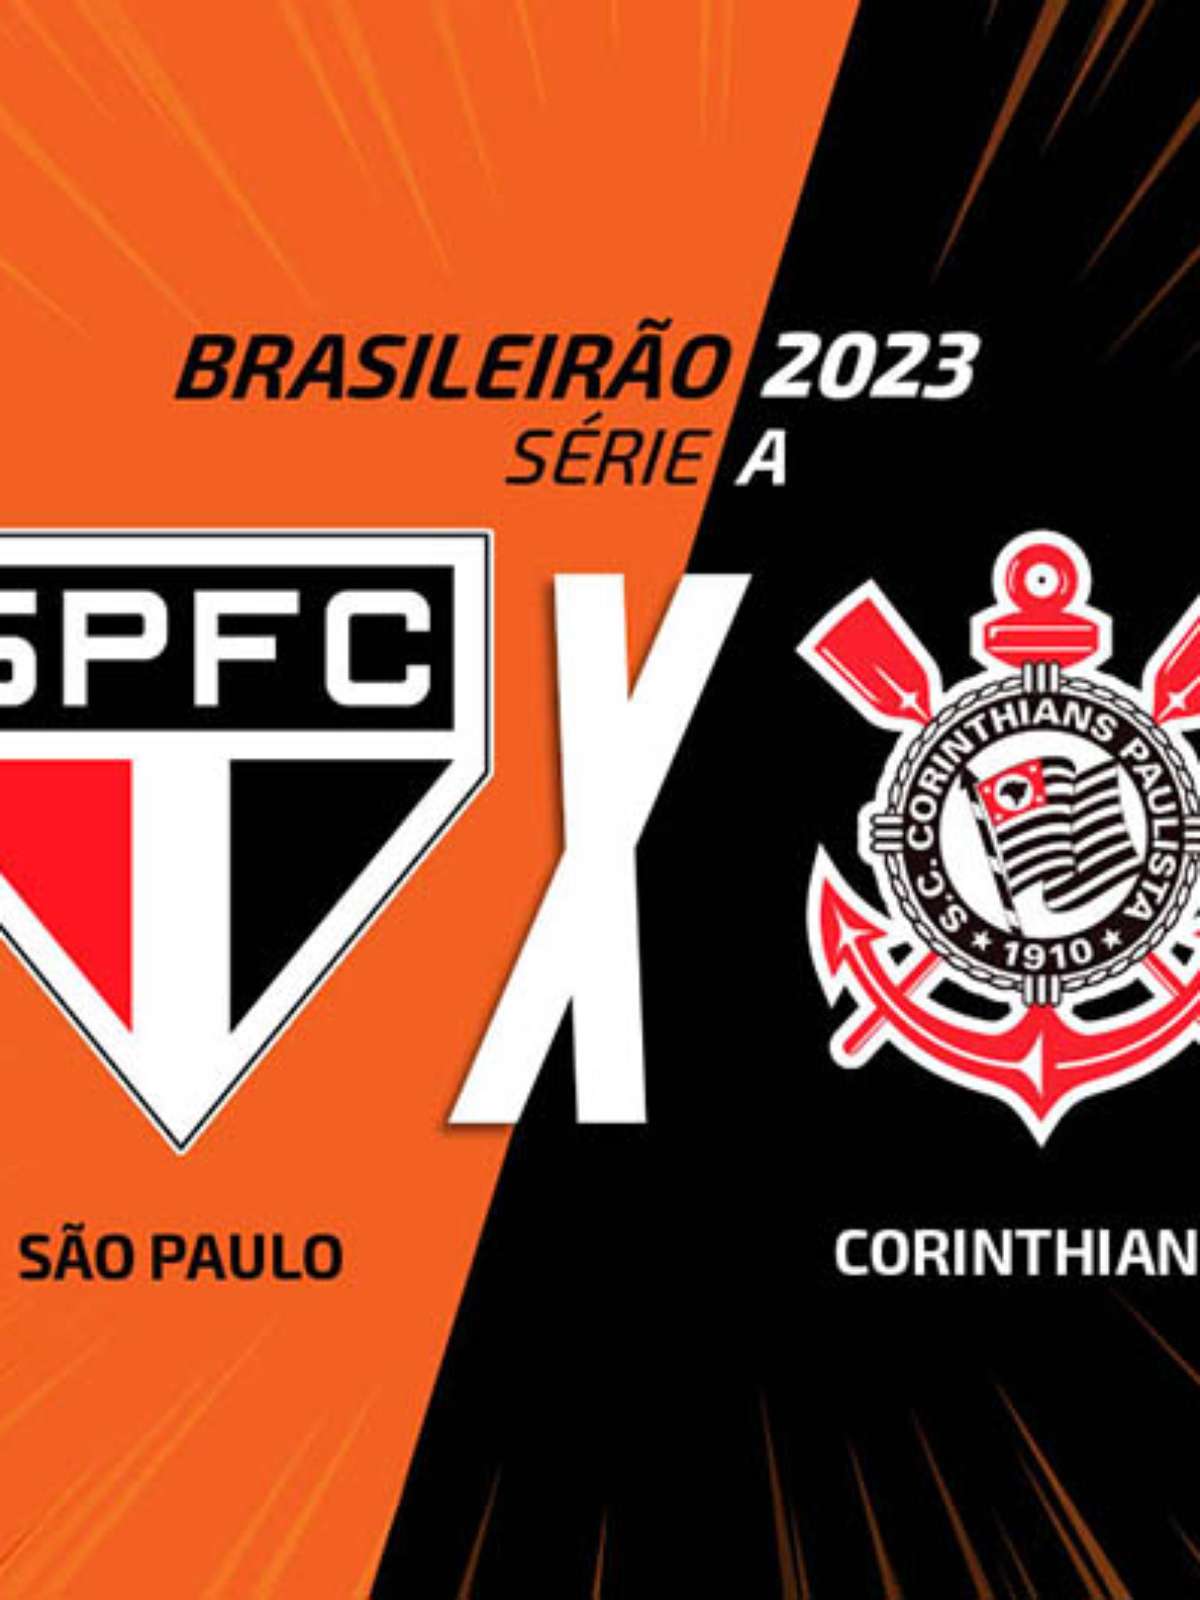 Assistir São Paulo x Corinthians HD 30/09/2023 ao vivo